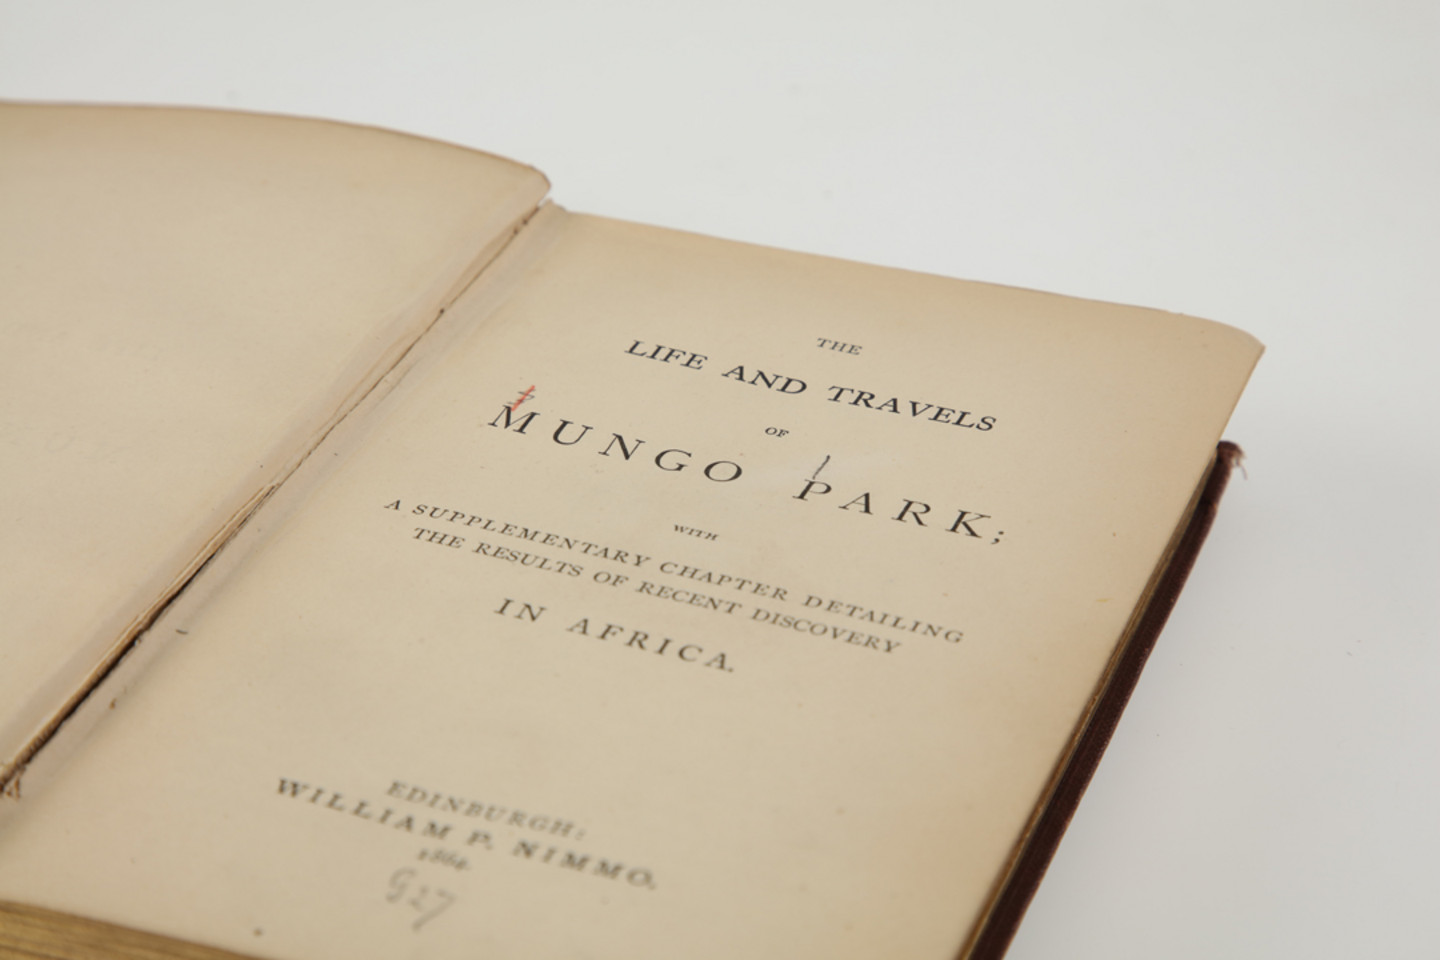 Foto eines beschädigten Buches aus dem Jahr 1864: Park, Mungo: The life and travels of Mungo Park. - Edinburgh: William P. Nimmo Ballantyne and Company, Printers 1864. Signatur: GG1/1720. Die Projektnummer lautet 2022/0015